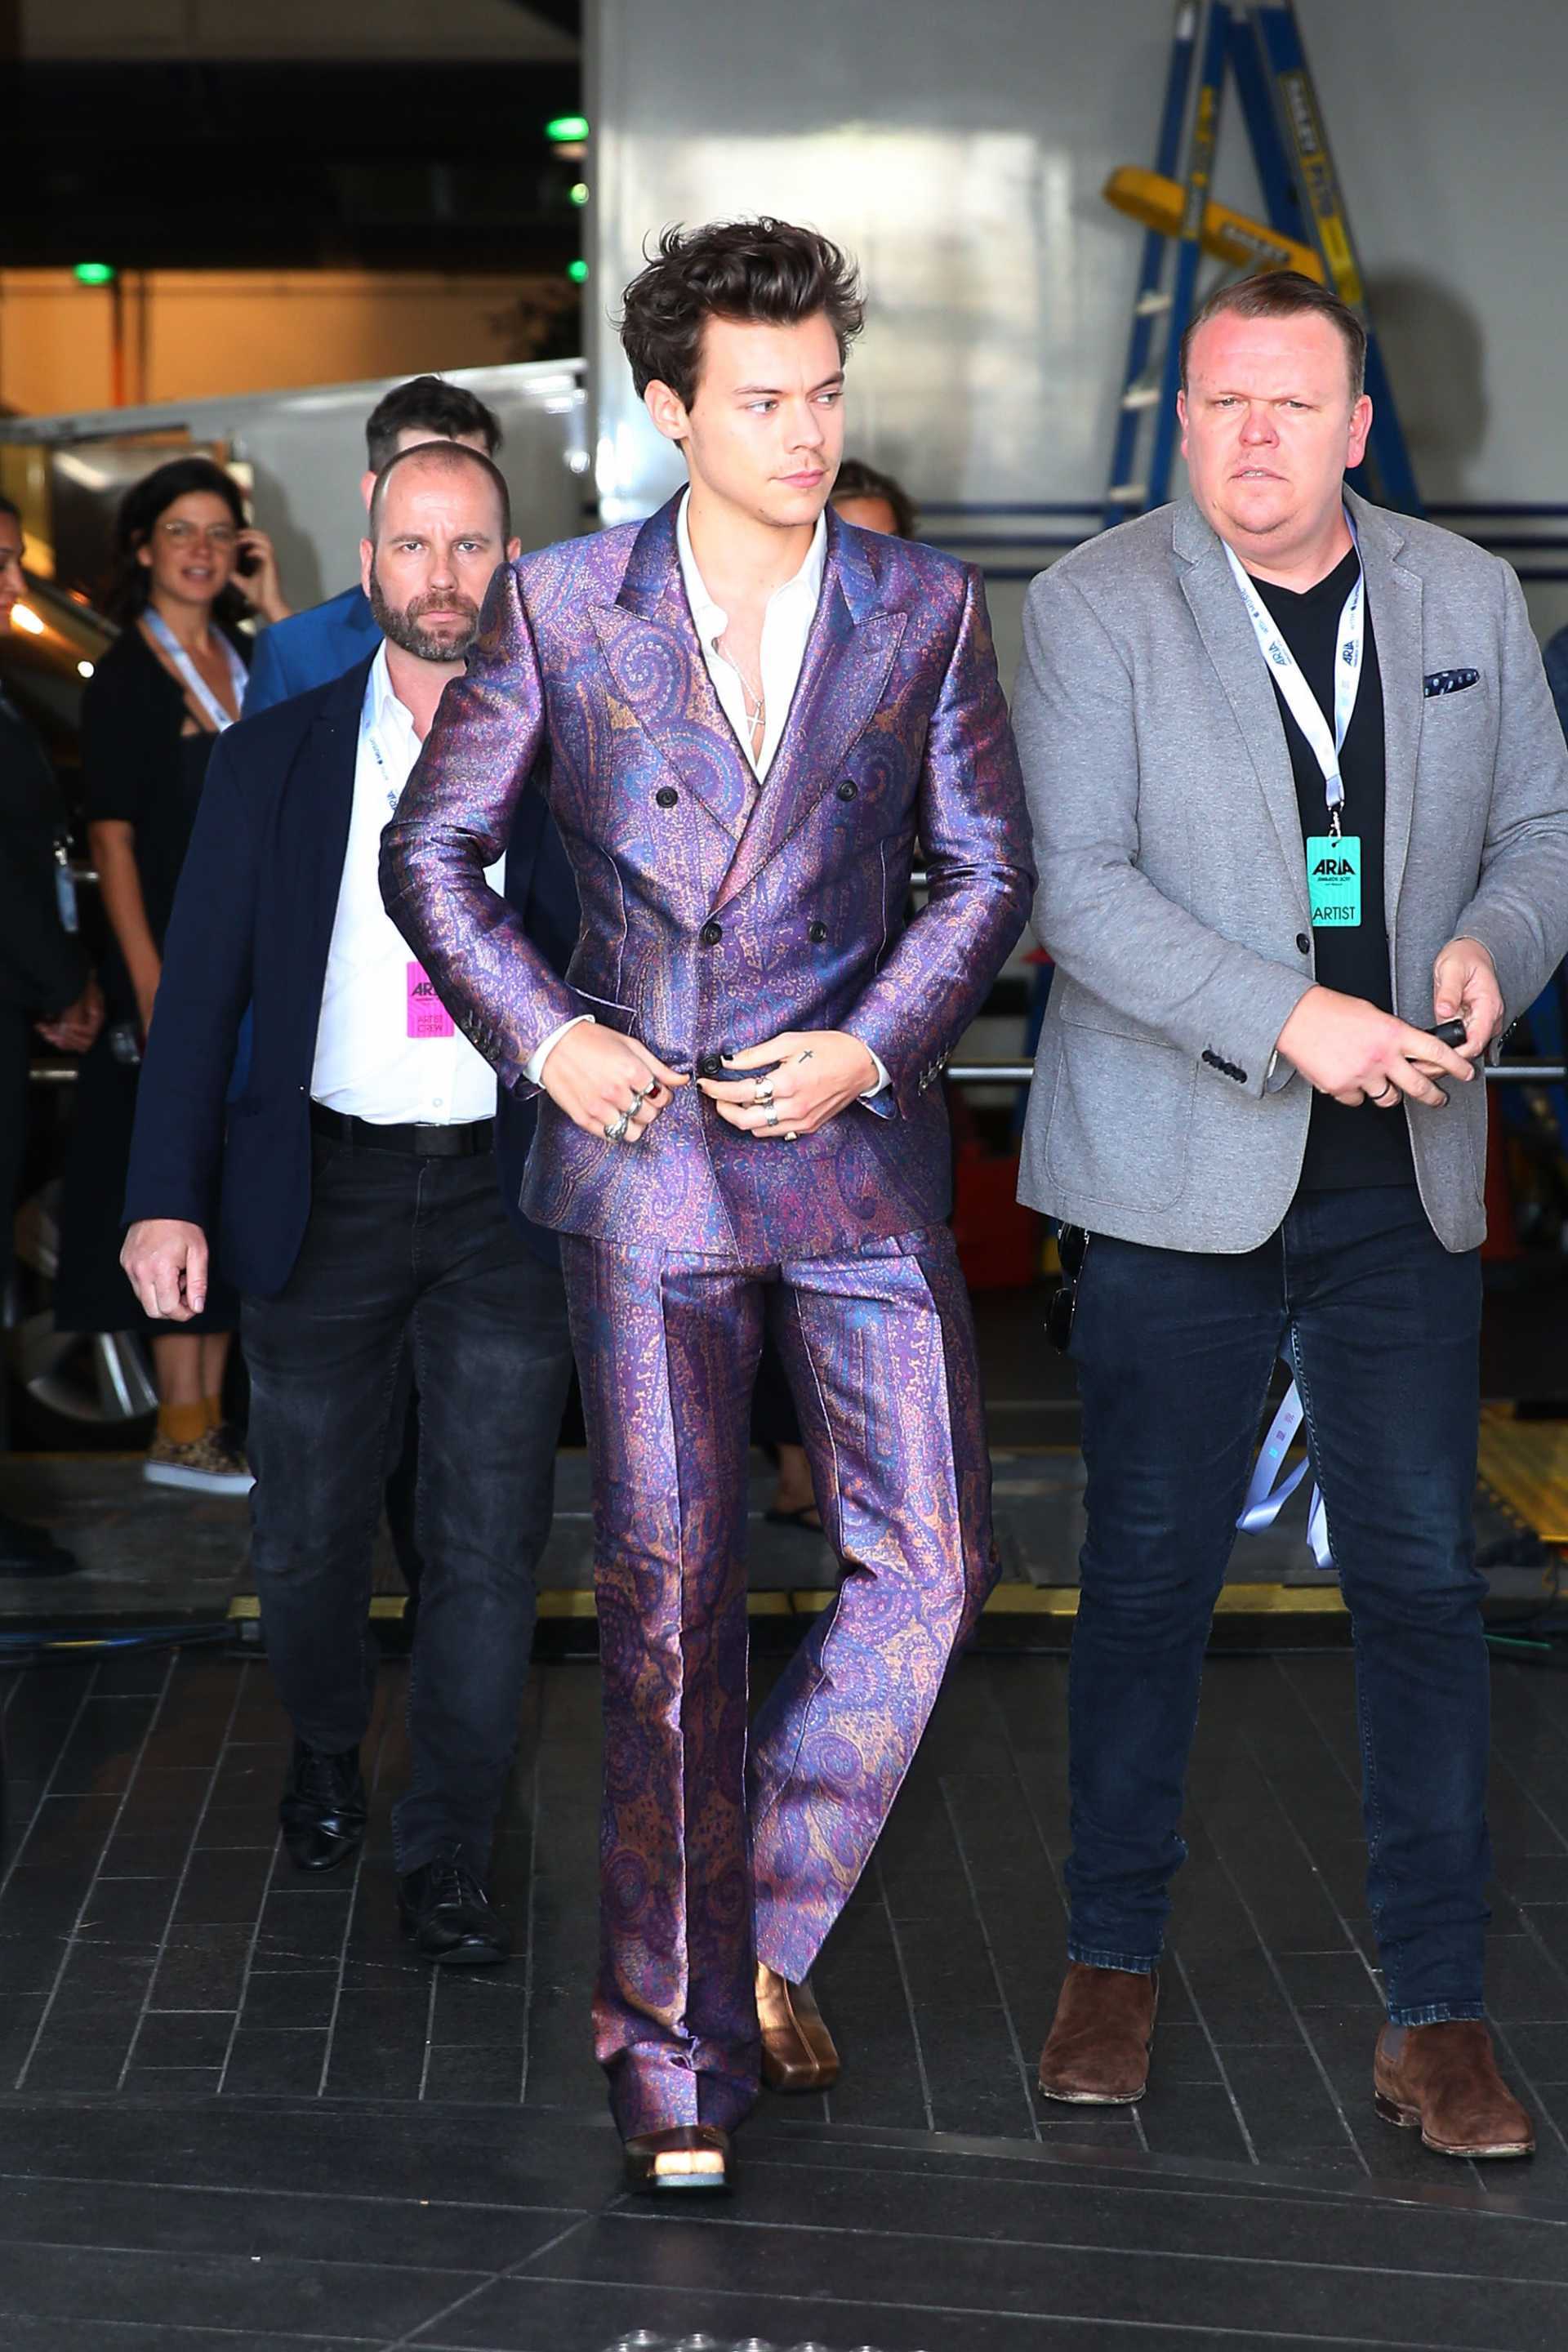 Harry Styles at the ARIA Awards – November 2017